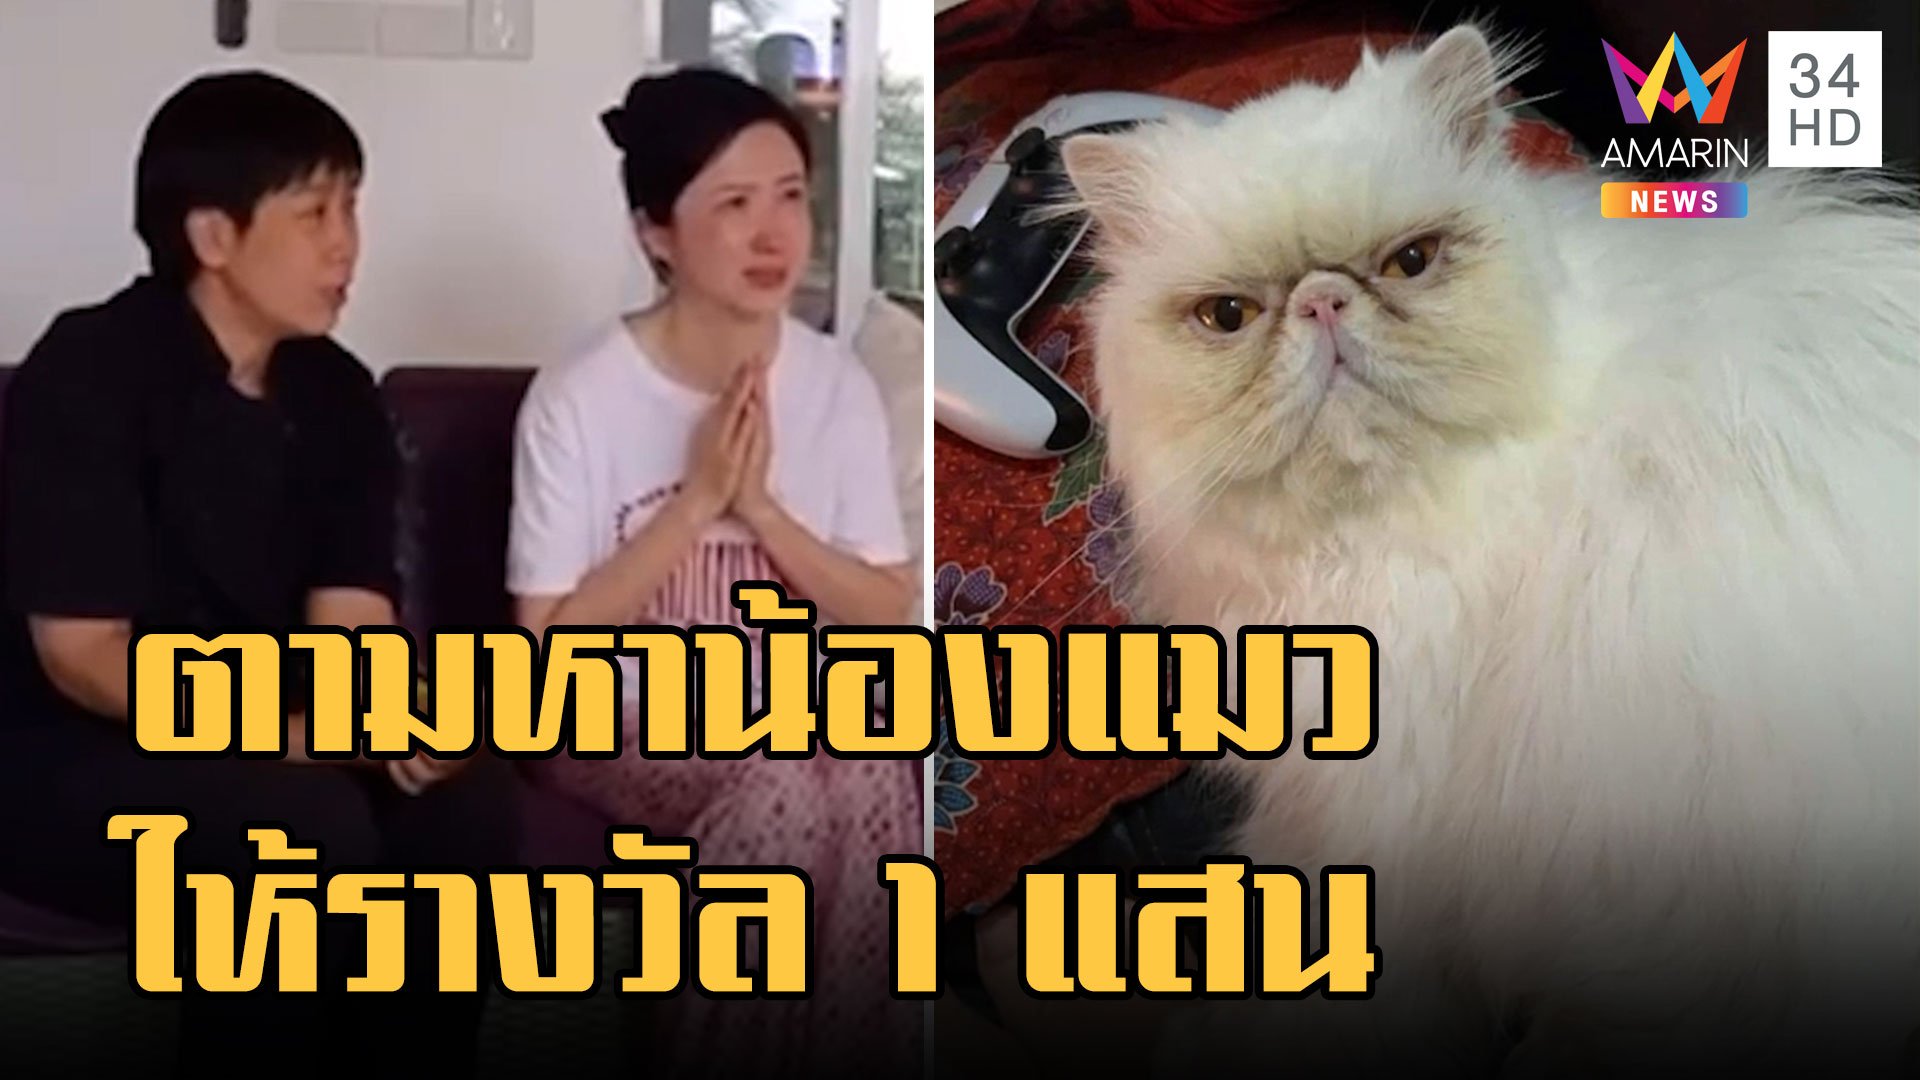 สาวจีนปล่อยโฮตามหาแมวรัก ใจป้ำตั้งรางวัลคนเจอ 1 แสน | ข่าวอรุณอมรินทร์ | 26 ม.ค. 66 | AMARIN TVHD34